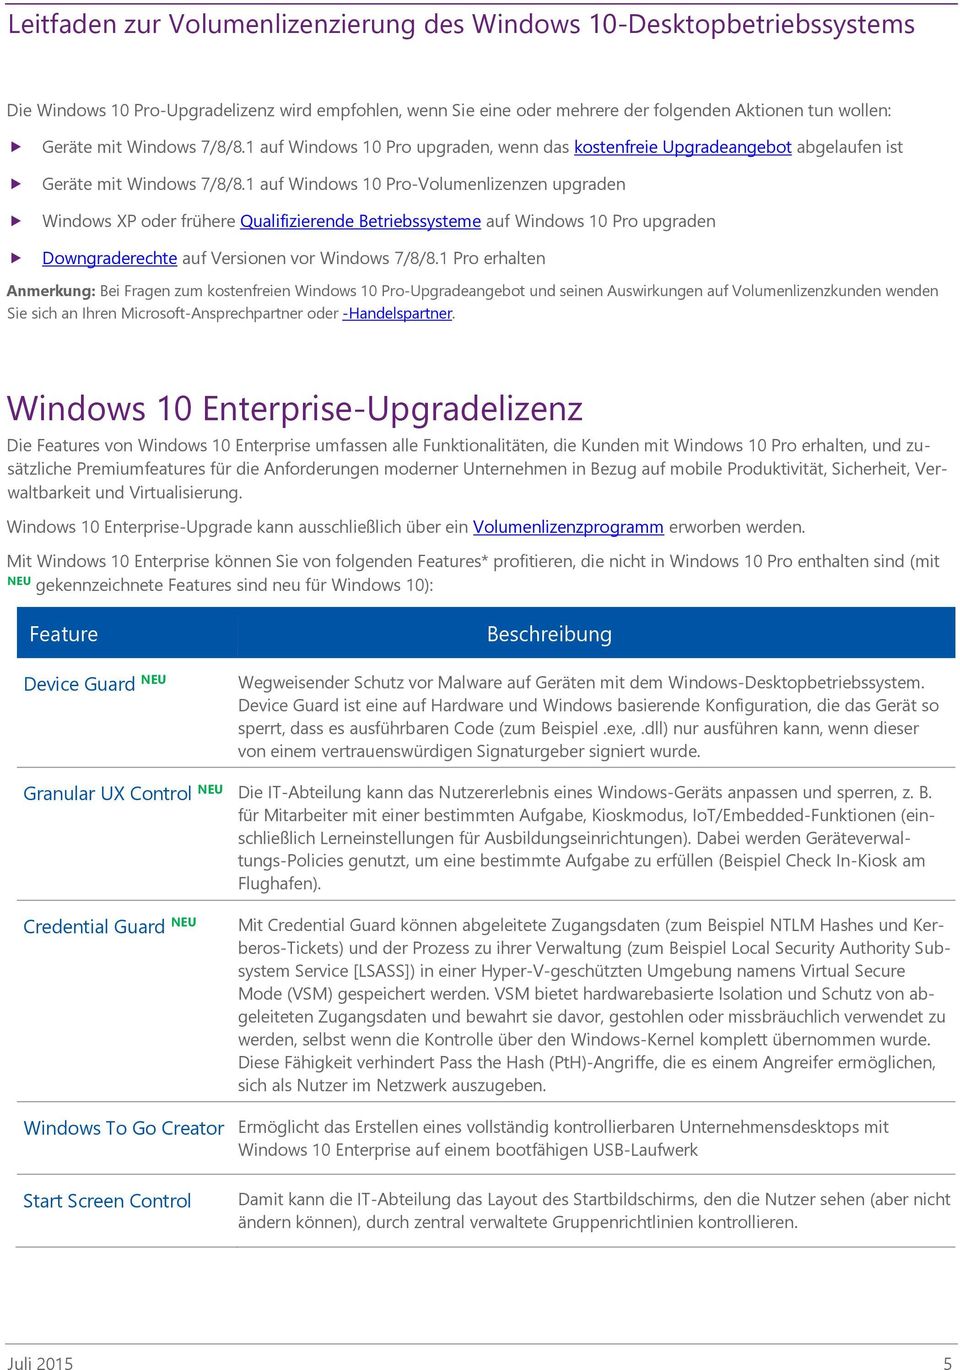 1 auf Windows 10 Pro-Volumenlizenzen upgraden Windows XP oder frühere Qualifizierende Betriebssysteme auf Windows 10 Pro upgraden Downgraderechte auf Versionen vor Windows 7/8/8.